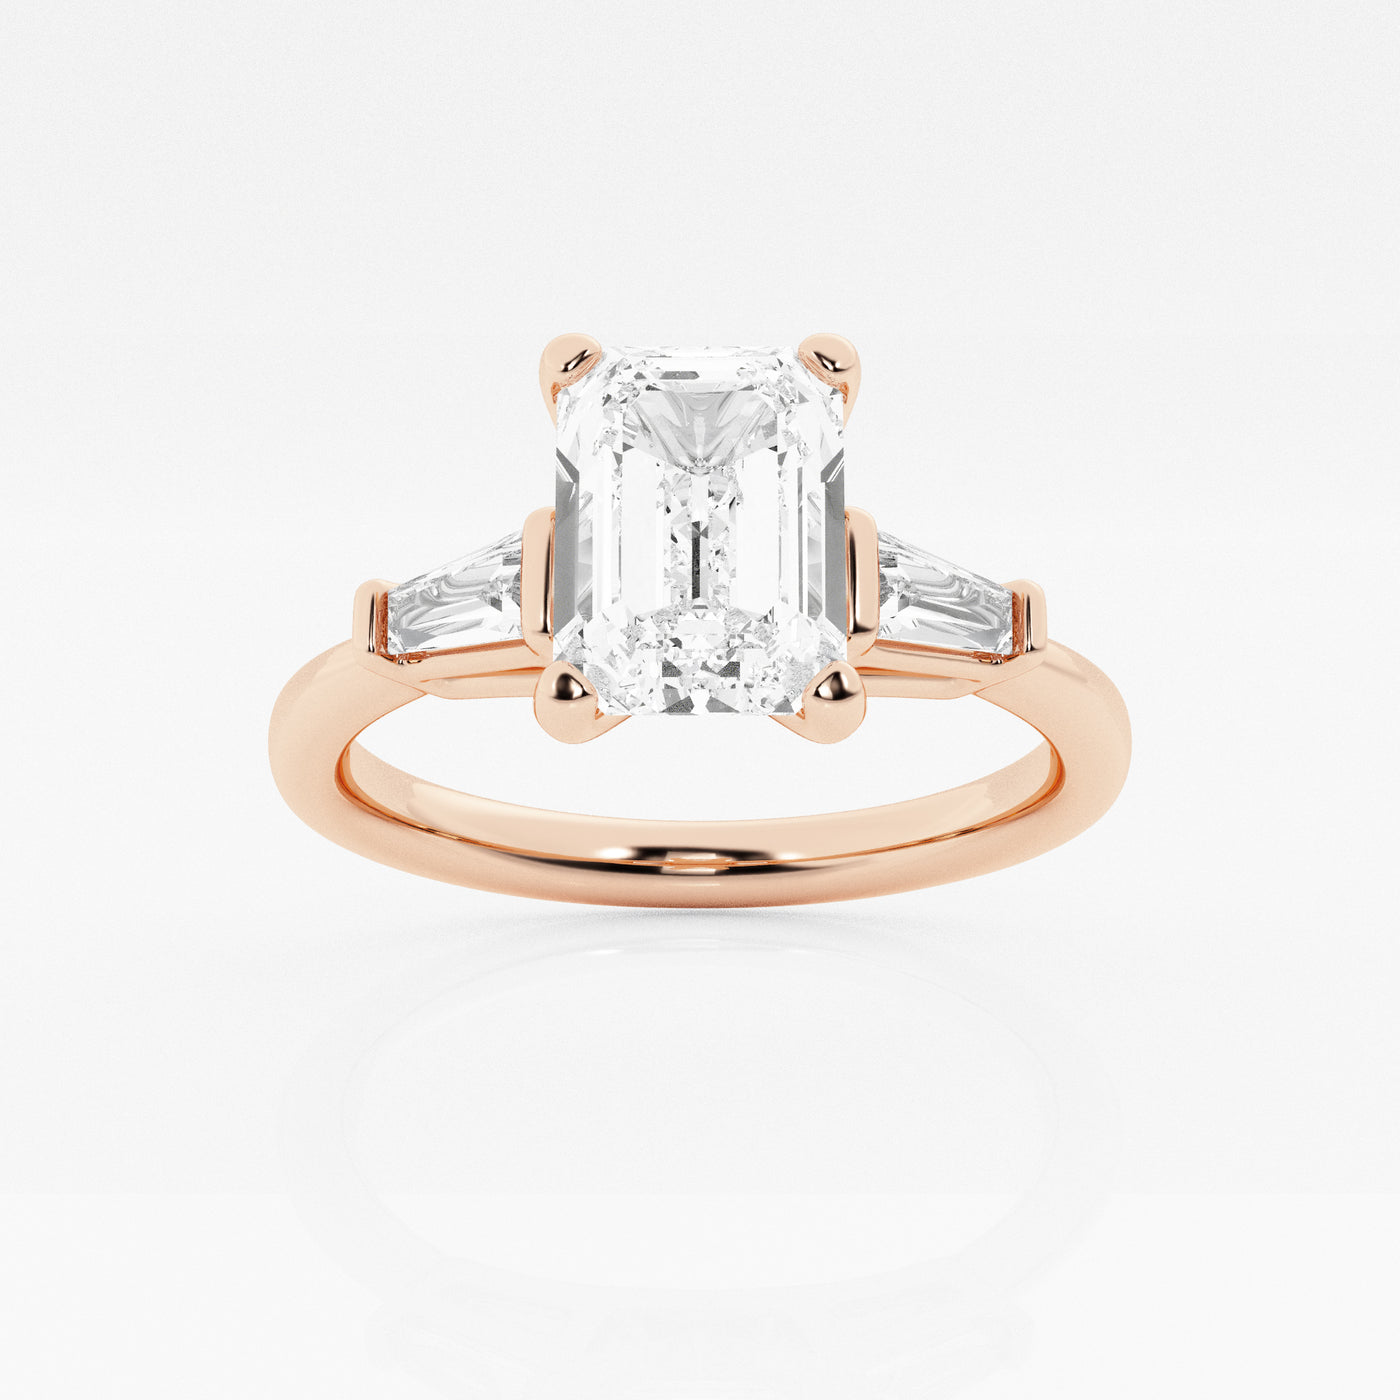 _main_image@SKU:LGR0617X3E200SOGS4~#carat_2.24#diamond-quality_fg,-vs2+#metal_18k-rose-gold